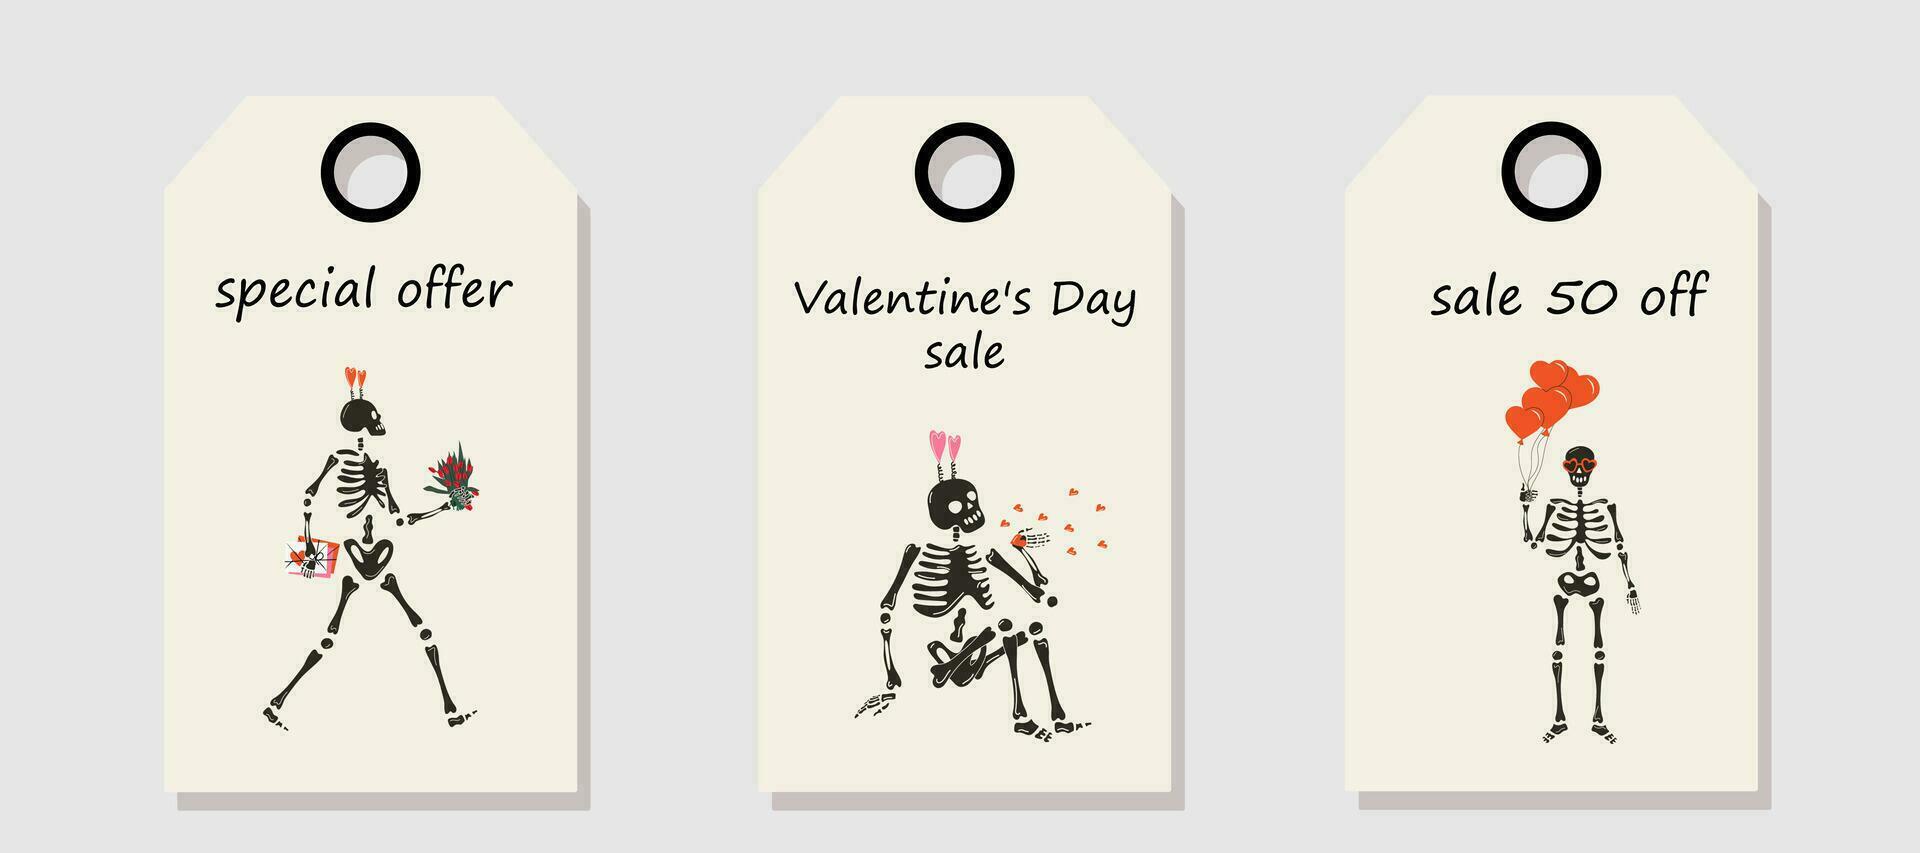 Vektor einstellen von Rabatt Preis Stichworte. Etiketten mit komisch Skelett mit Dekor zum Valentinstag Tag. Valentinstag Tag Verkauf.